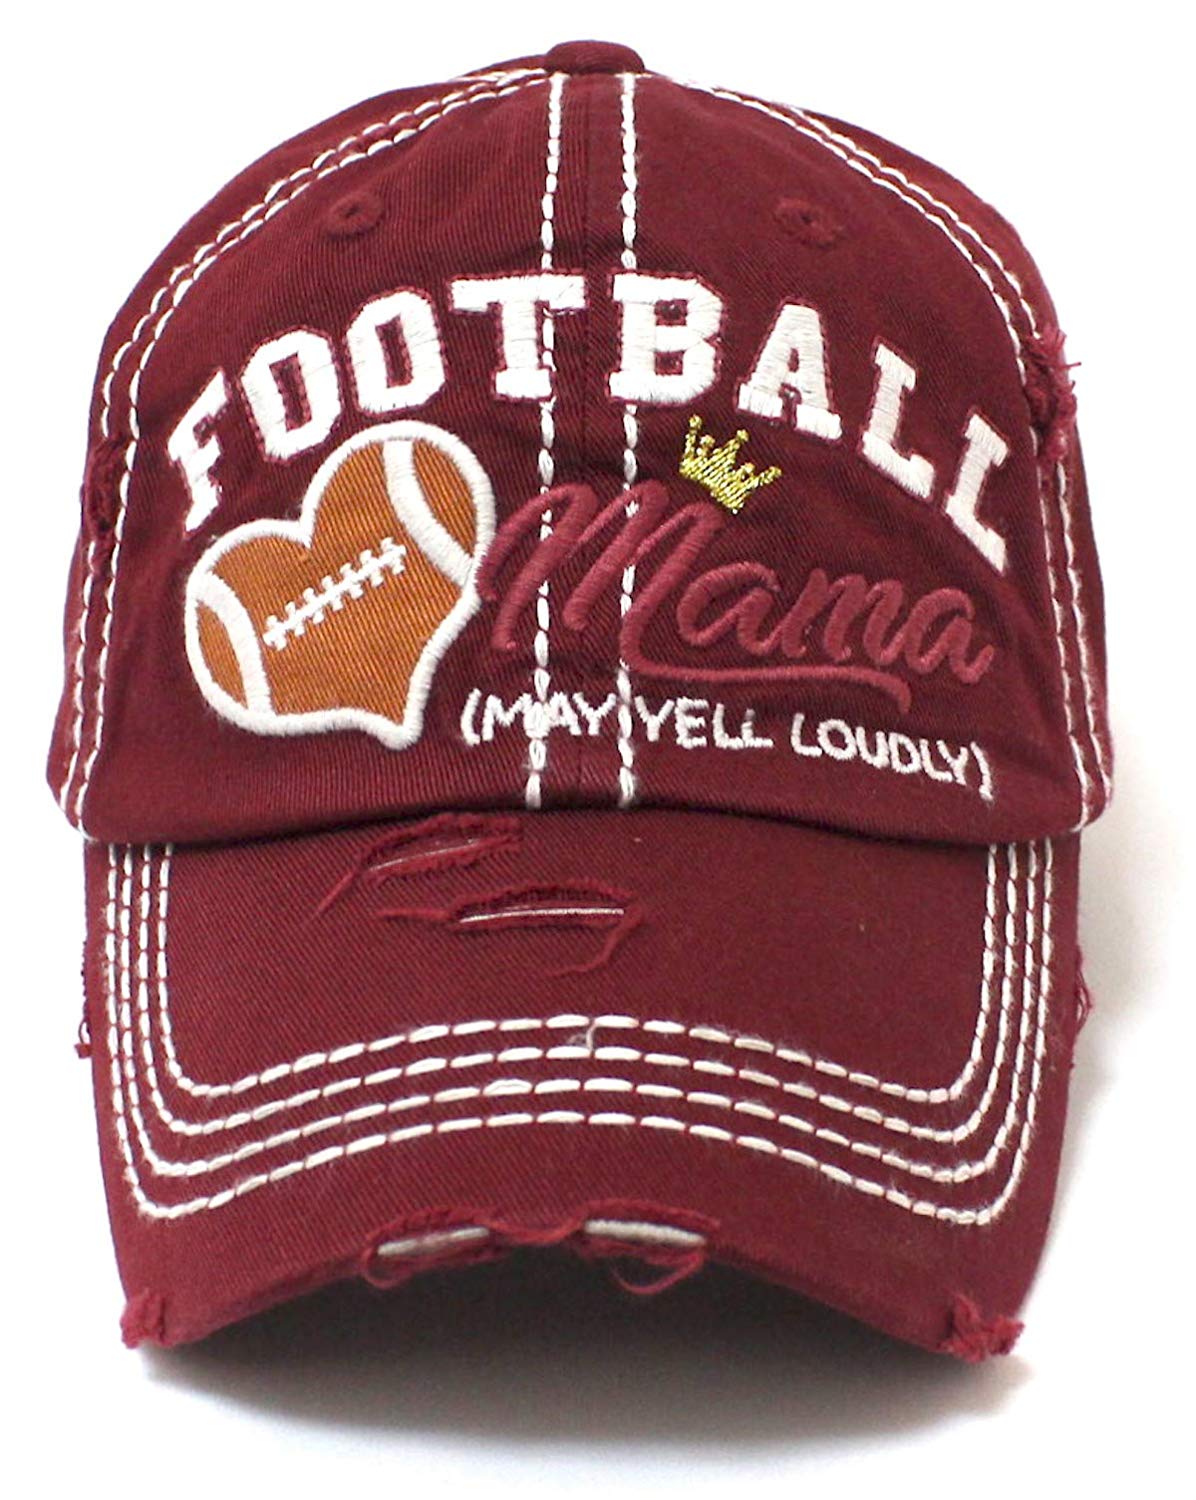 CAPS 'N VINTAGE Burgundy Football Mama Cheer Queen Hat - Caps 'N Vintage 